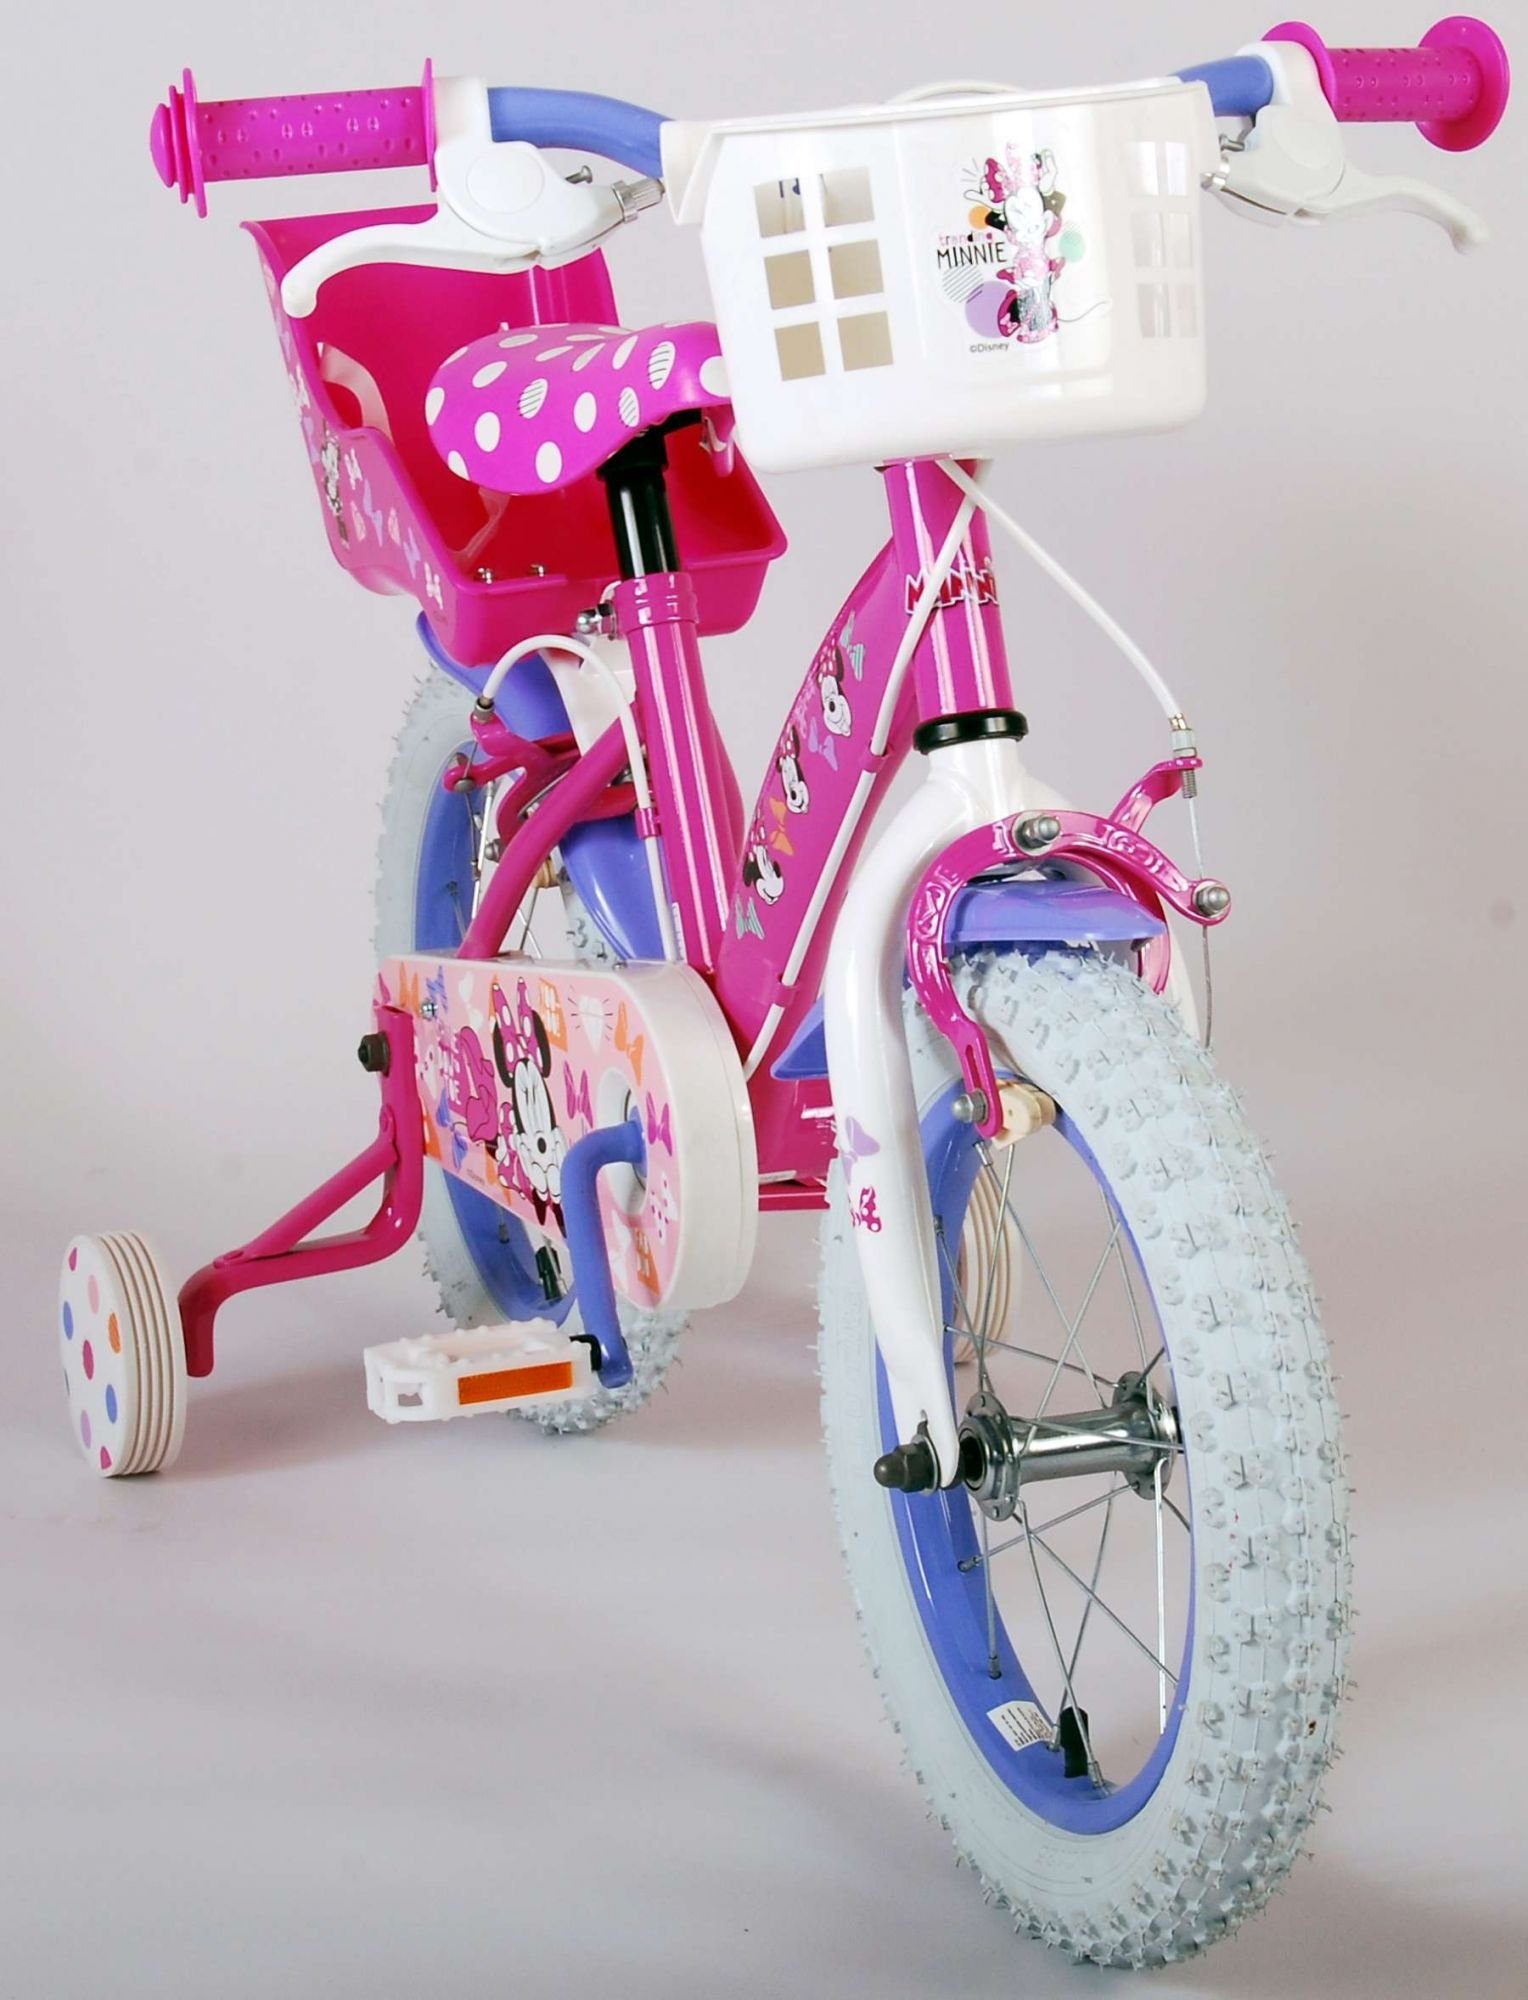 Stützräder TPFSports Gang, Zoll (Mädchen Kinderfahrrad 14 Mädchen Fahrrad mit Fahrrad Kinderrad 14 Minnie Zoll 2x Rutschfeste Sicherheitsgriffe), Disney Laufrad mit Kinder Handbremse, 1 -